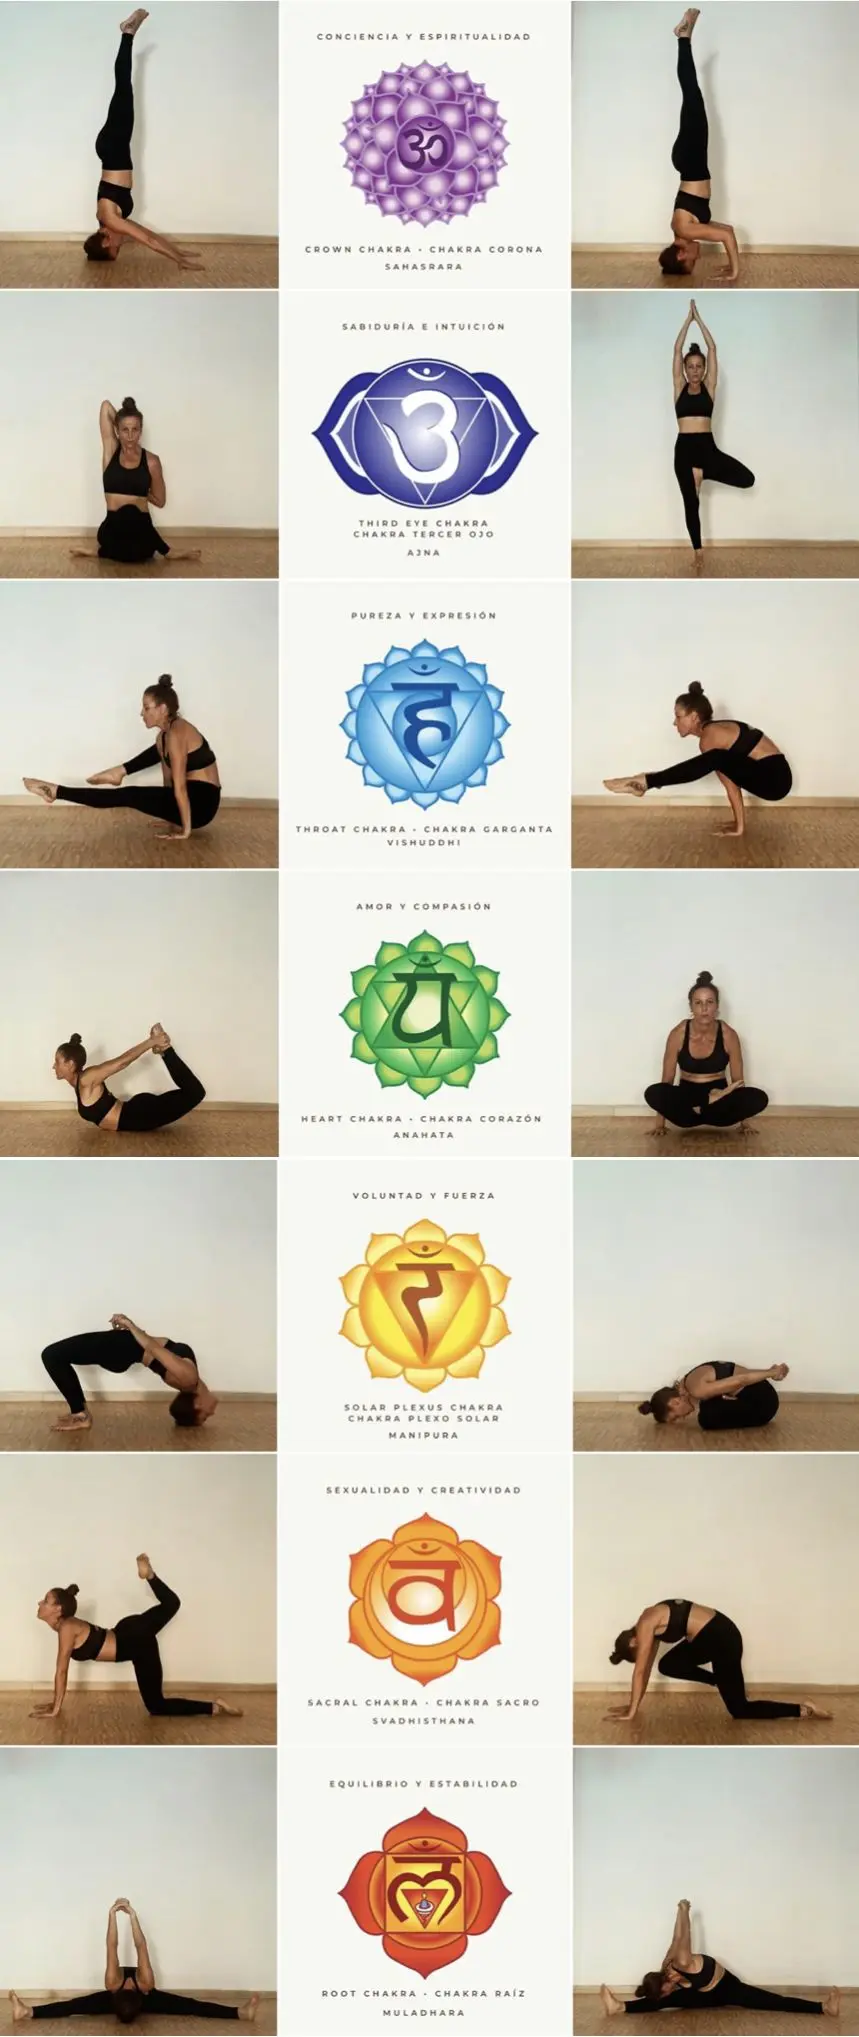 yoga para equilibrar los chakras - Cómo se hace para equilibrar los chakras